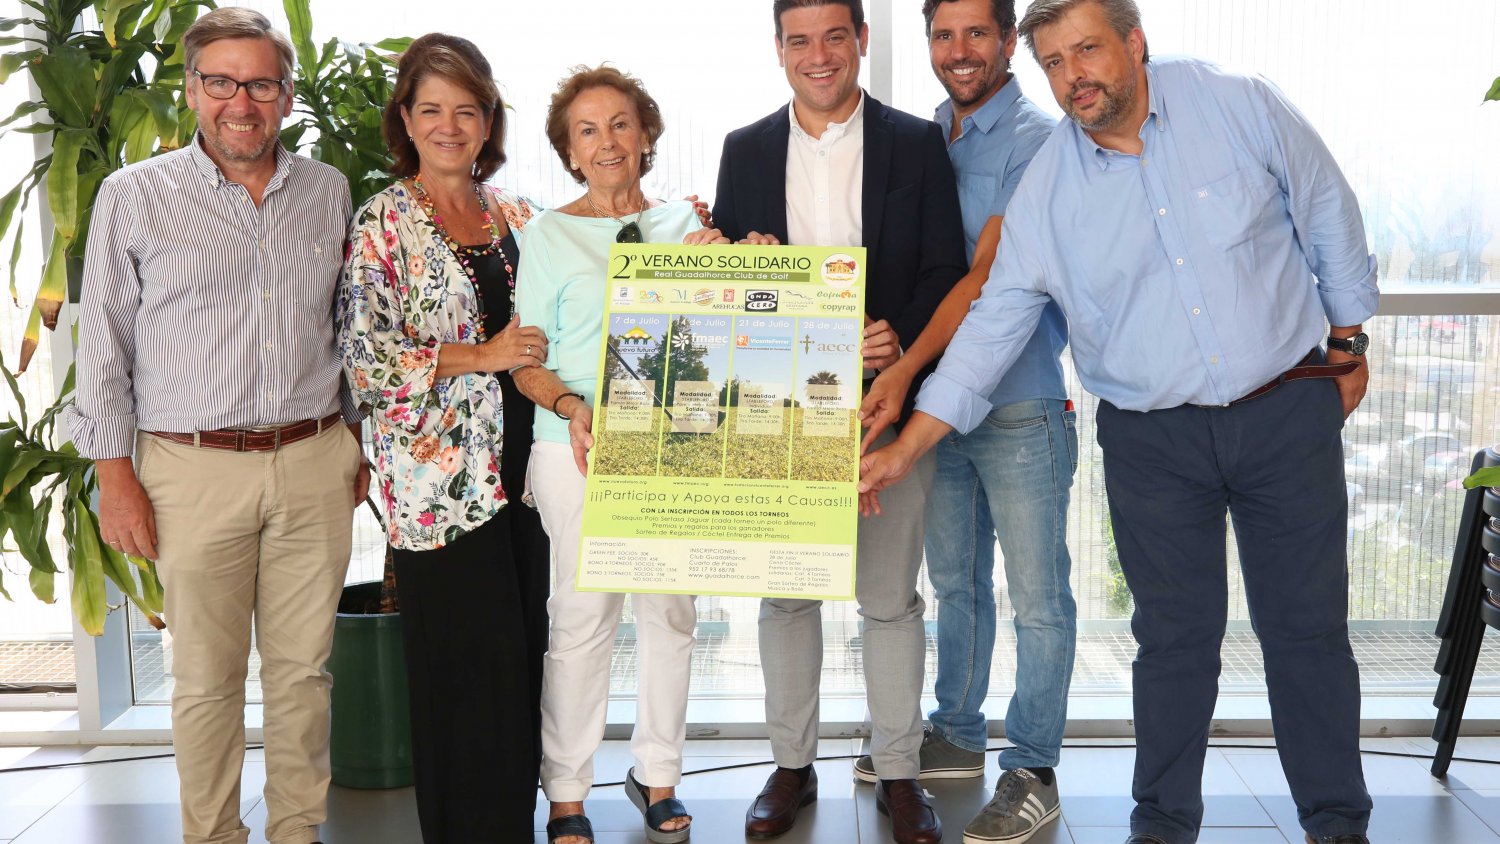 Concluye este fin de semana el II Verano Solidario Guadalhorce Club de Golf con un torneo a favor de la Asociación Española contra el Cáncer